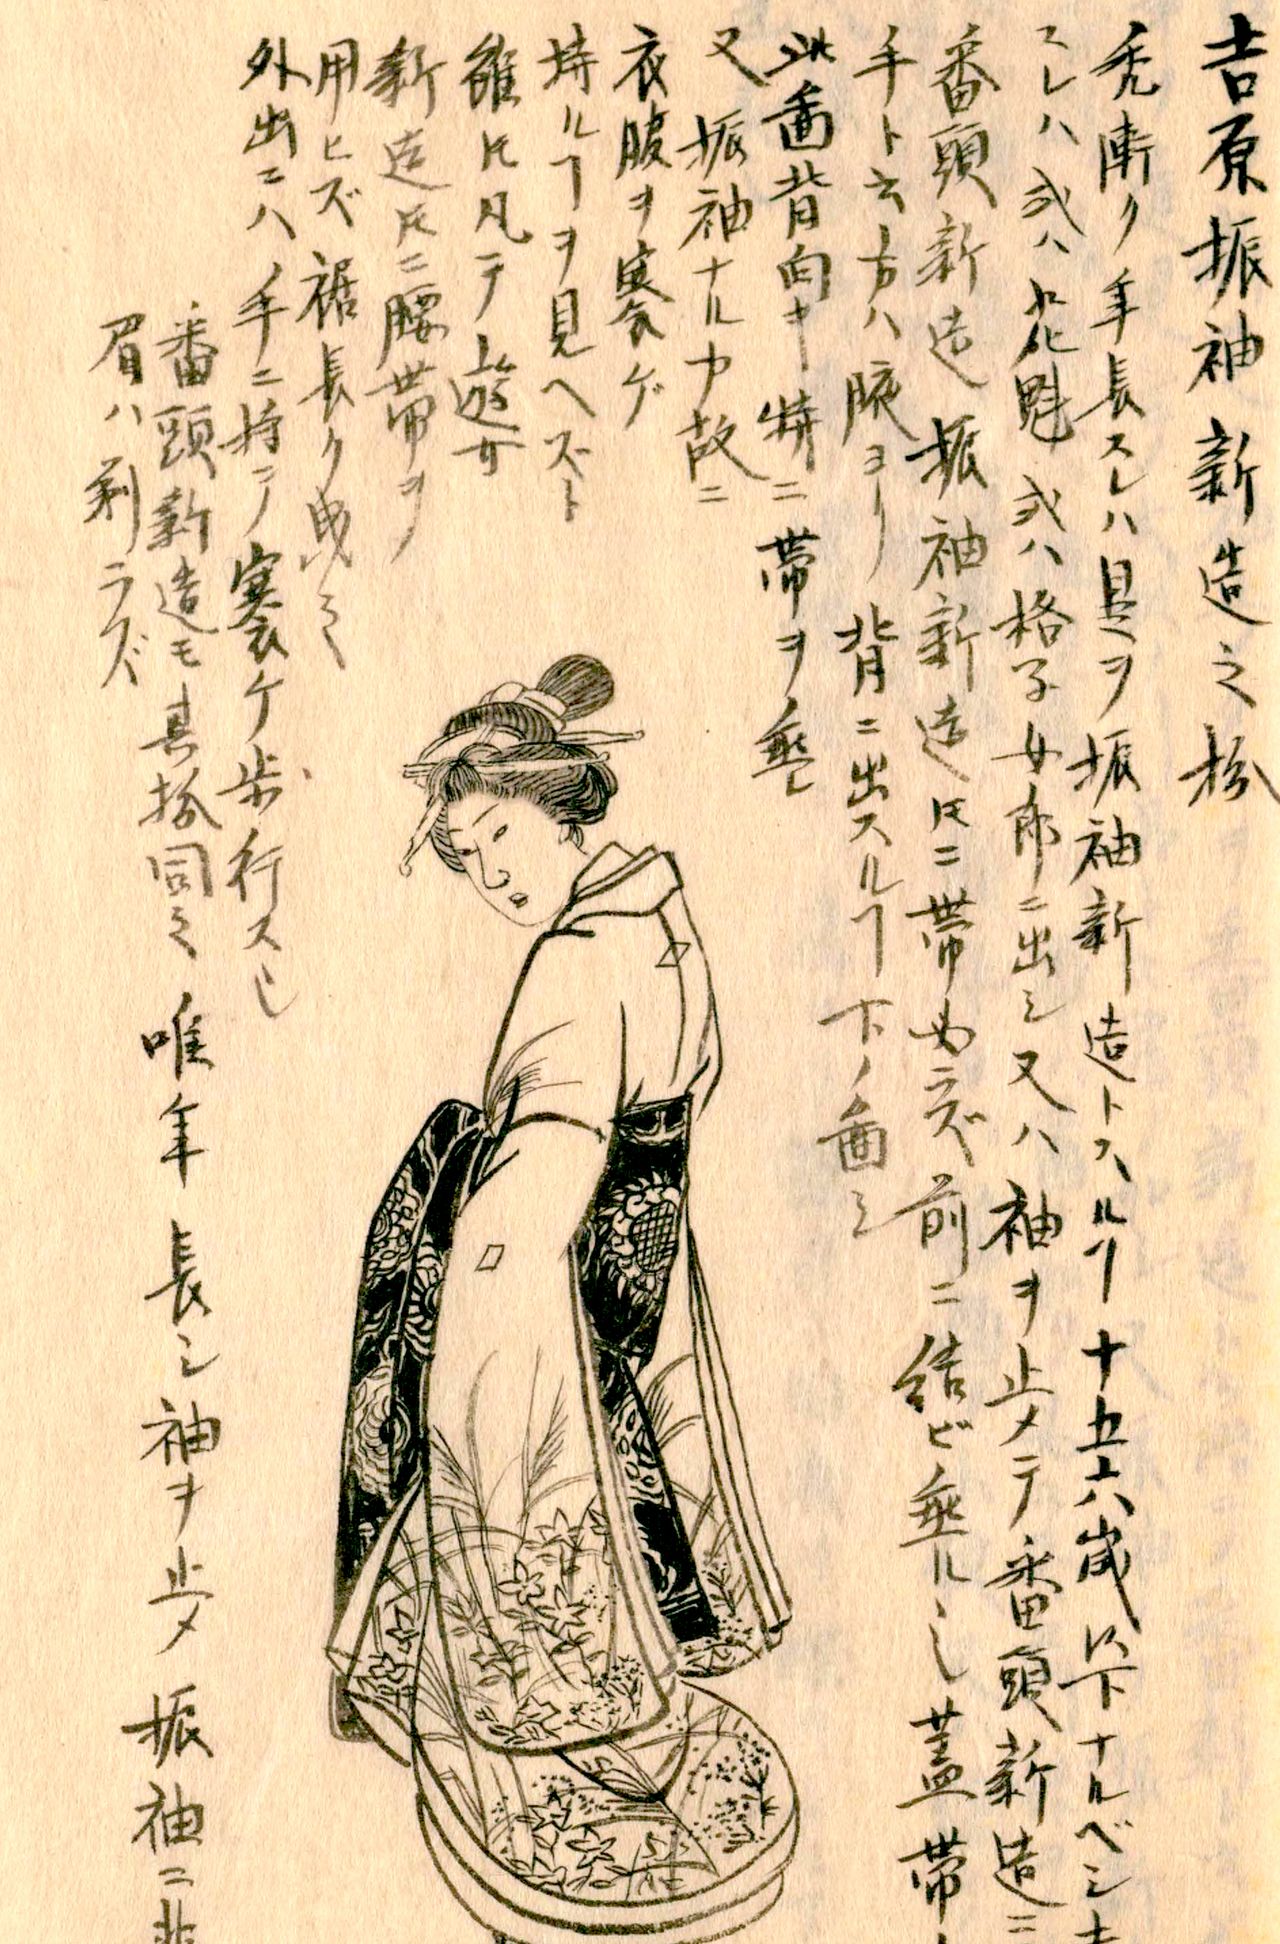 Una furisode shinzō en Yoshiwara. De Morisada mankō (Manuscrito de Morisada). (Cortesía de la Biblioteca Nacional de la Dieta)